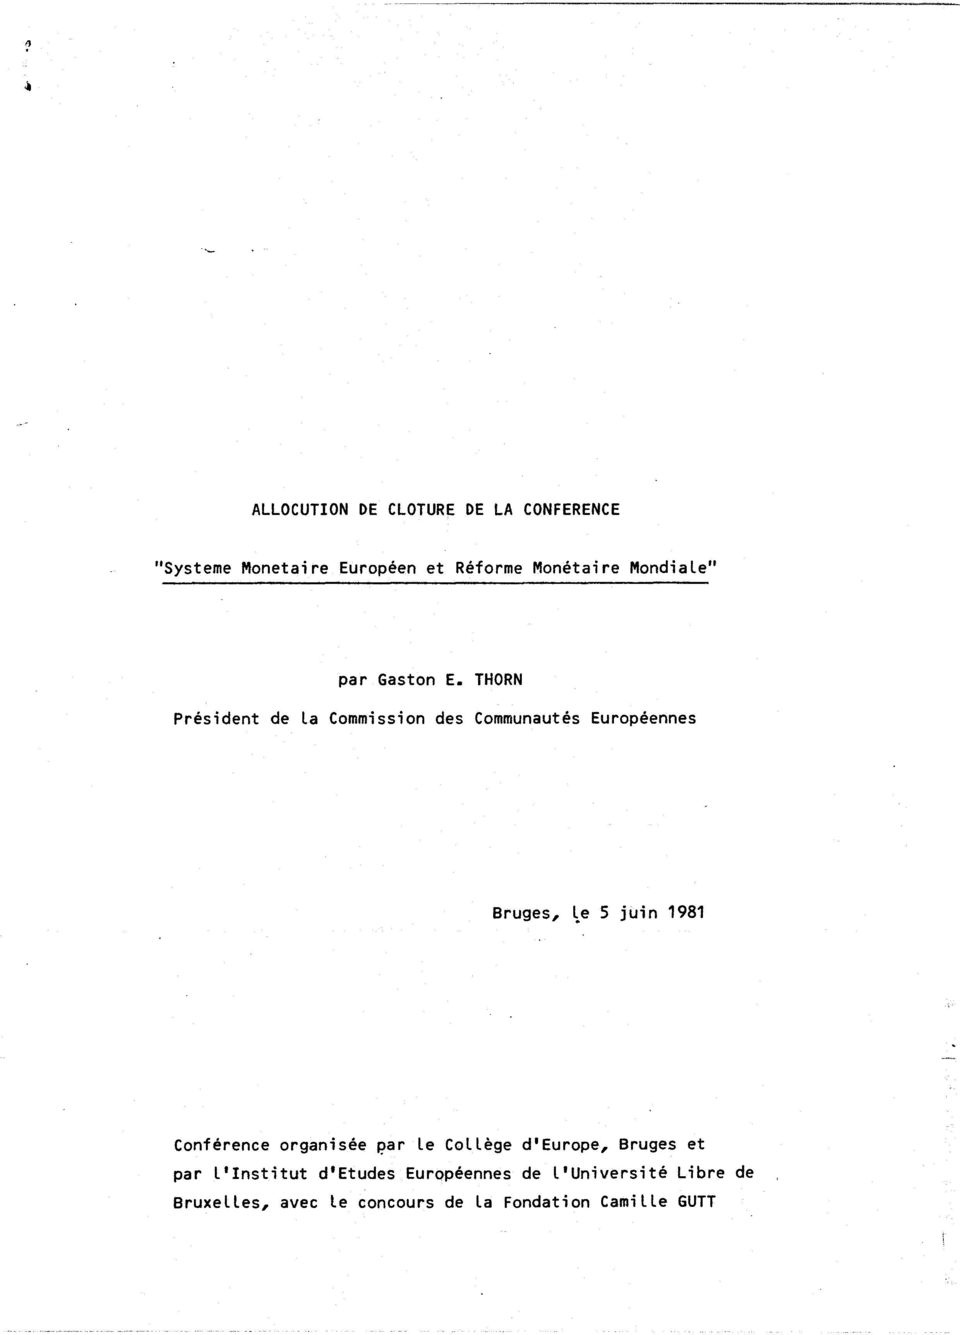 THORN President de la Commission des Communautes Europeennes Bruges, \e 5 juin 1981